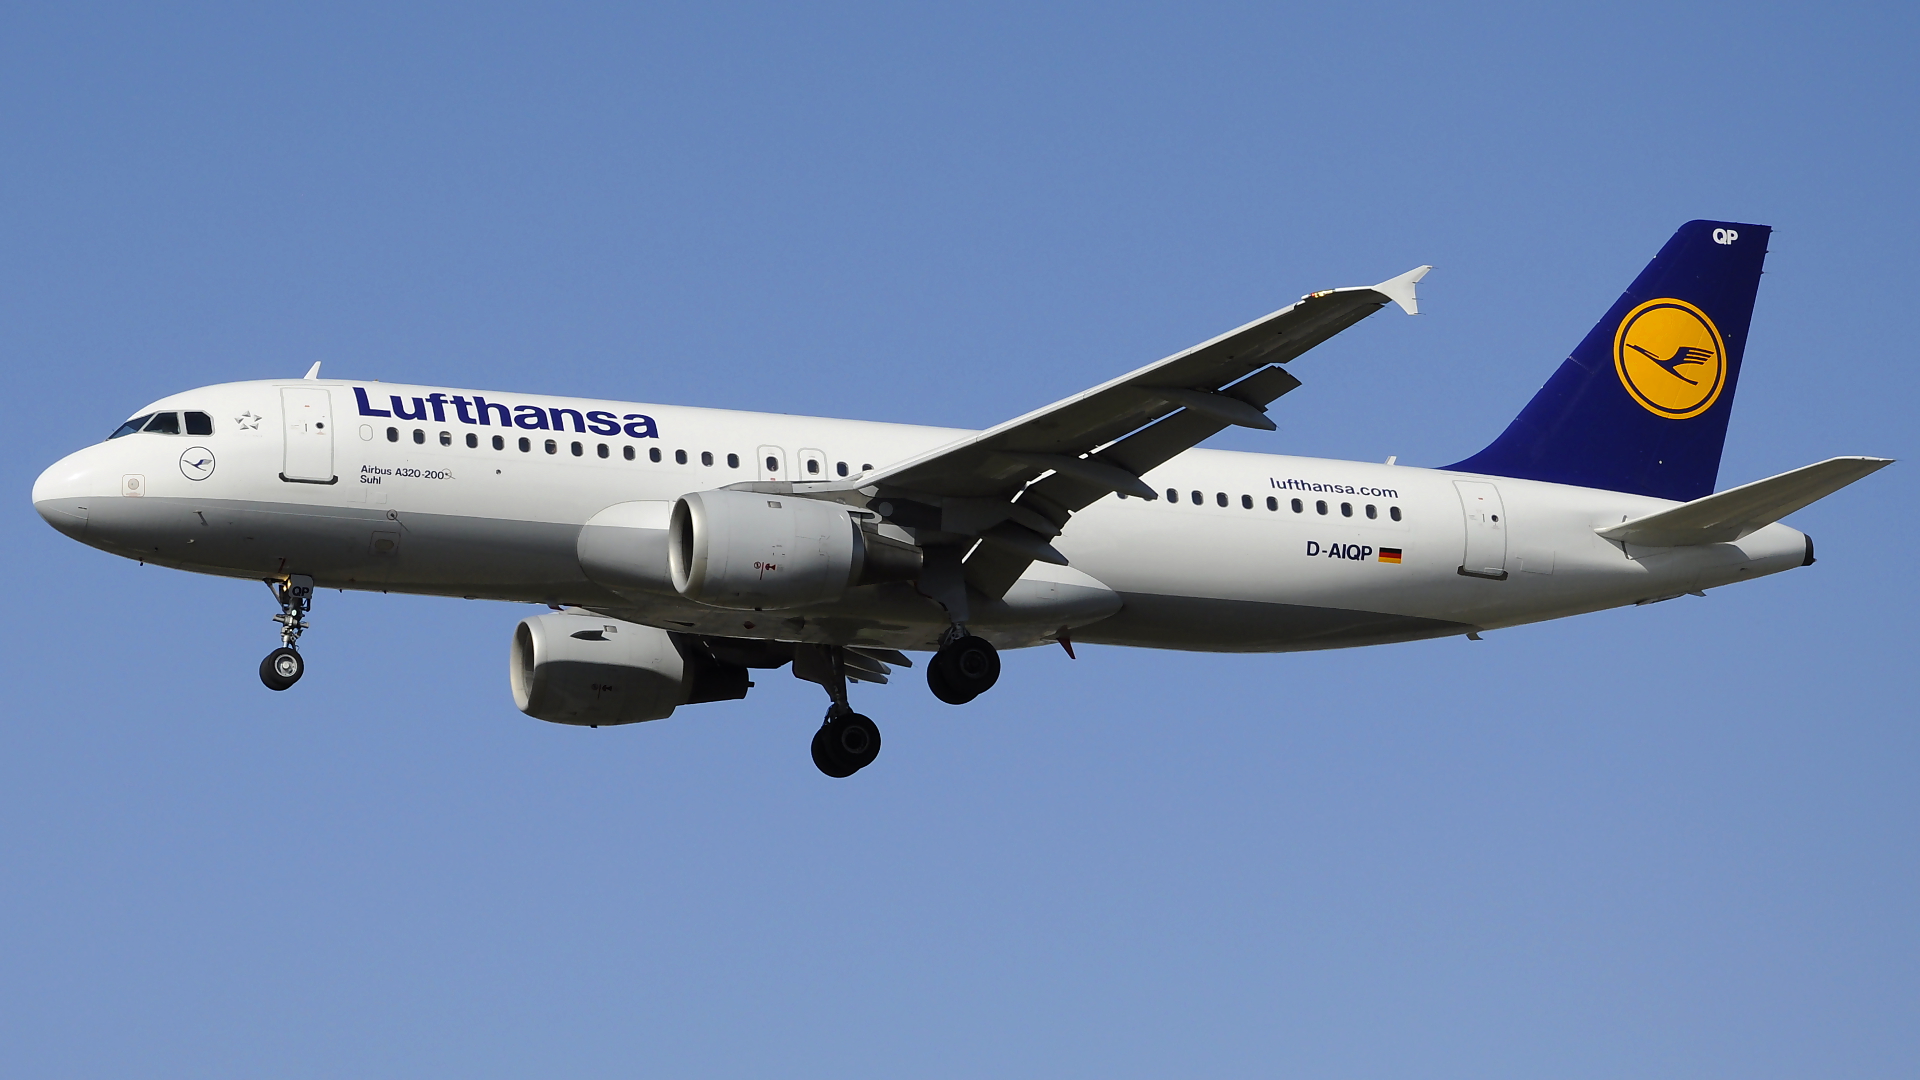 D-AIQP ✈ Lufthansa Airbus 320-211 @ London-Heathrow